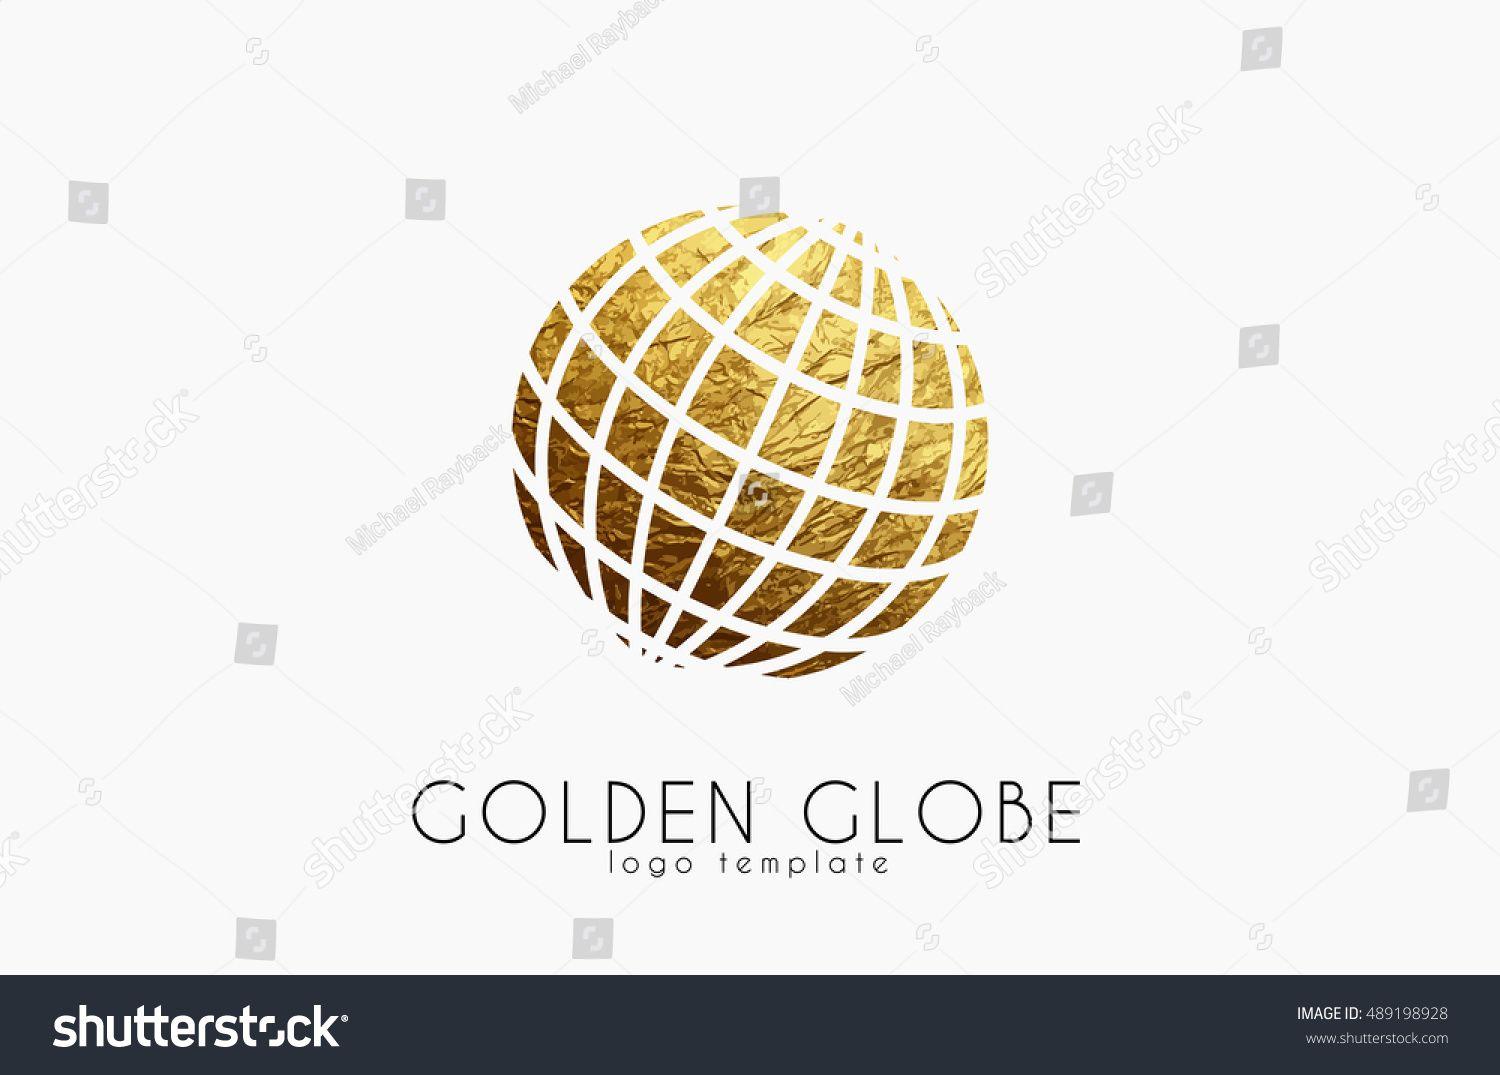 Golden E Logo - Golden globes Logos